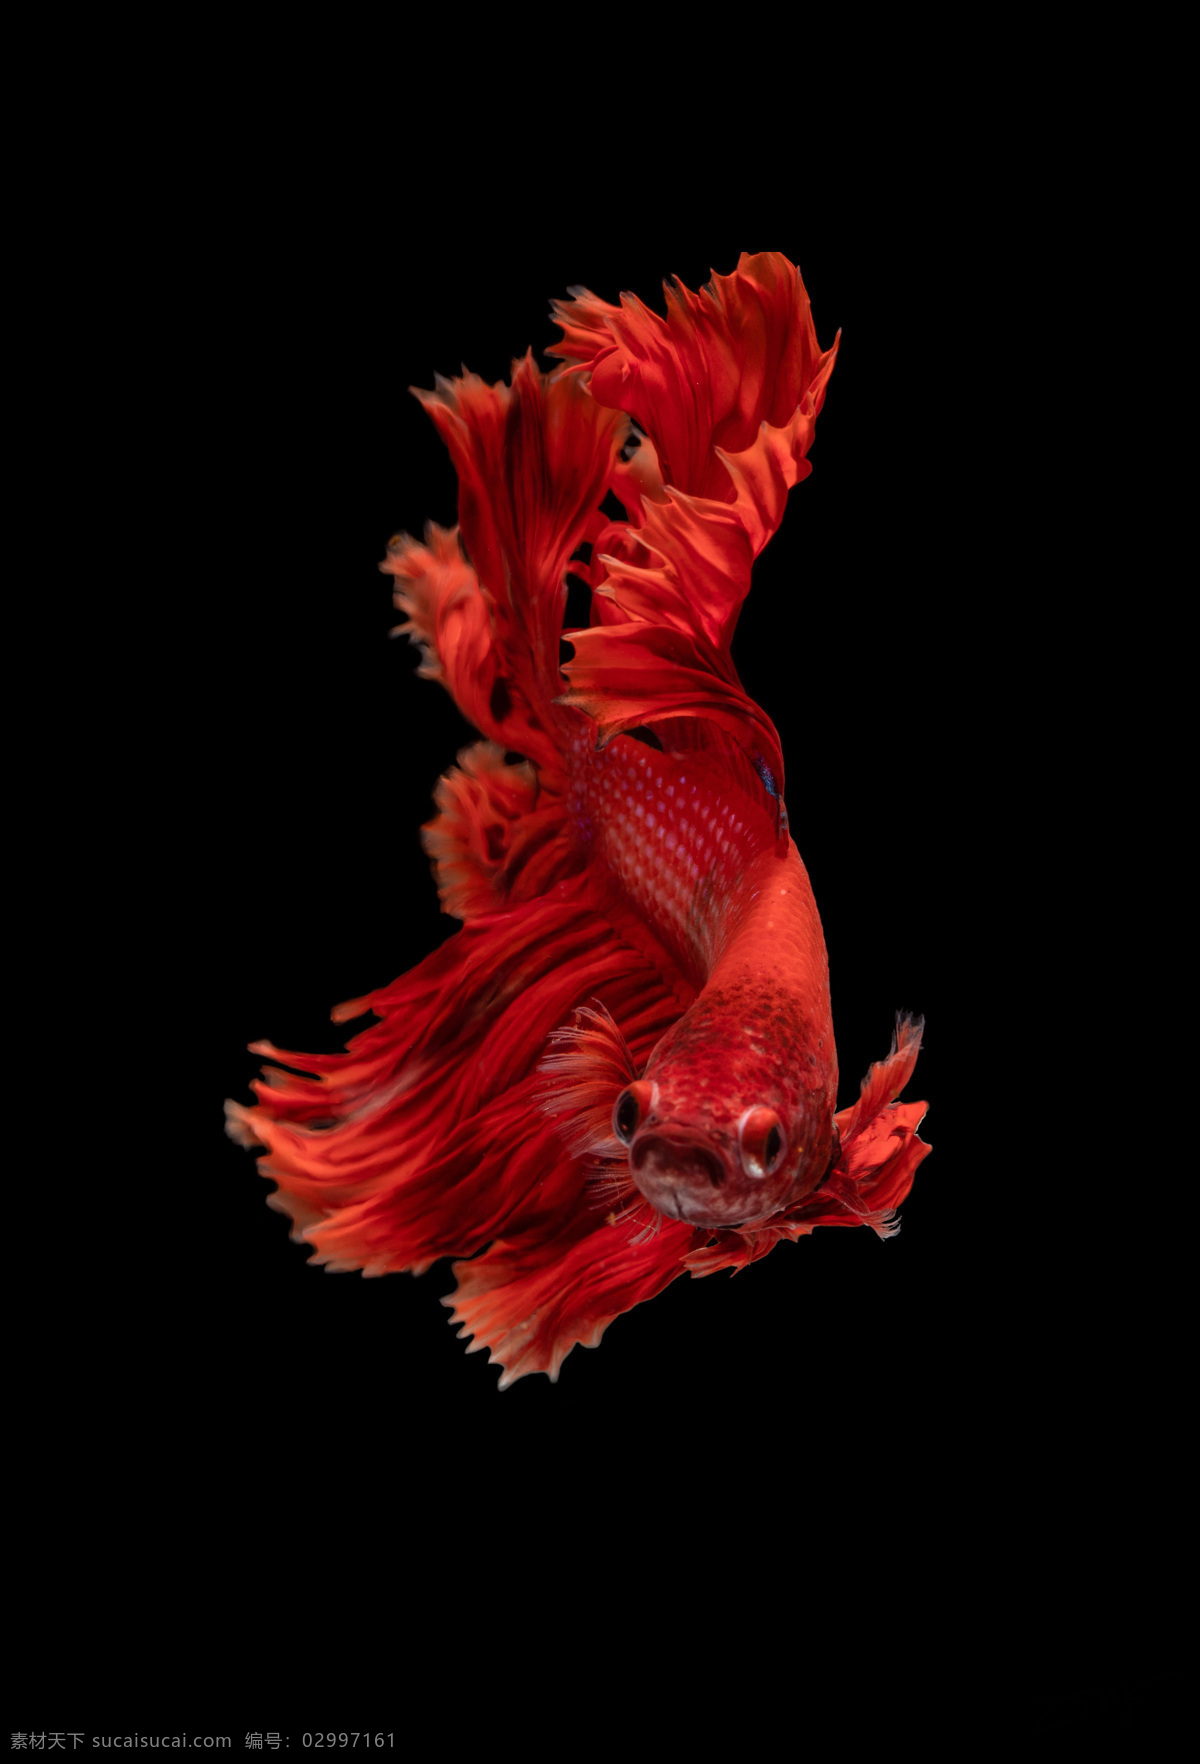 地产金鱼元素 金鱼 红色金鱼 金鱼摄影 地产质感 高质量 共享 分